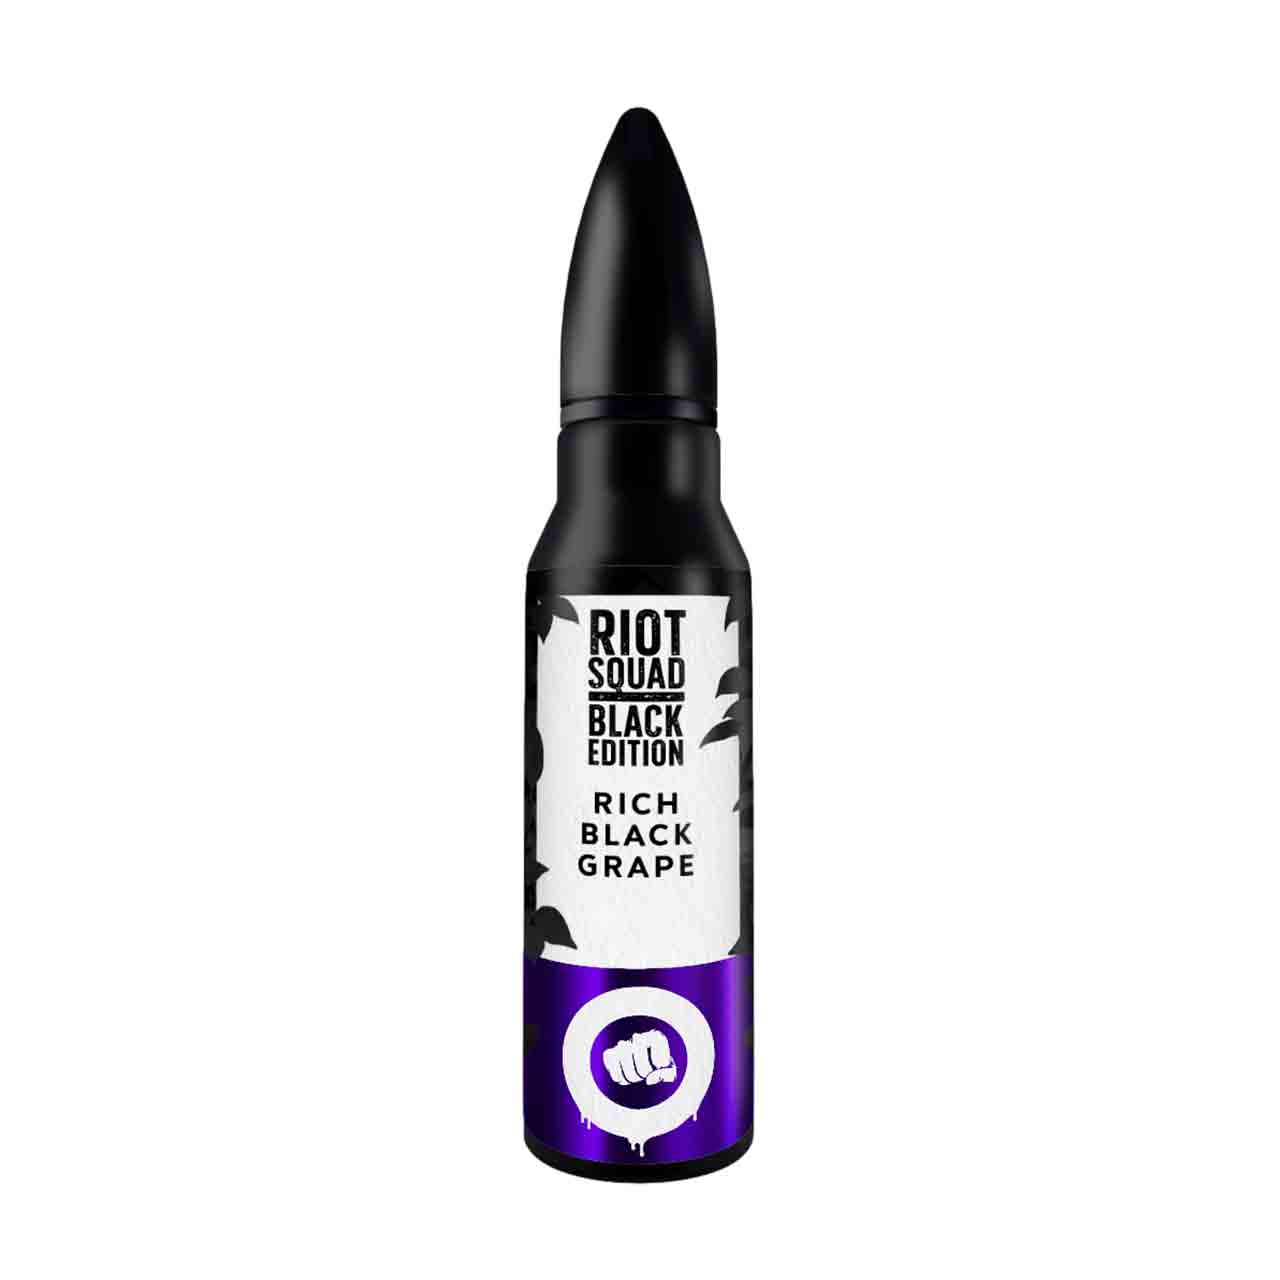 Riot Squad Black Edition Rich Black Grape Aroma Longfill